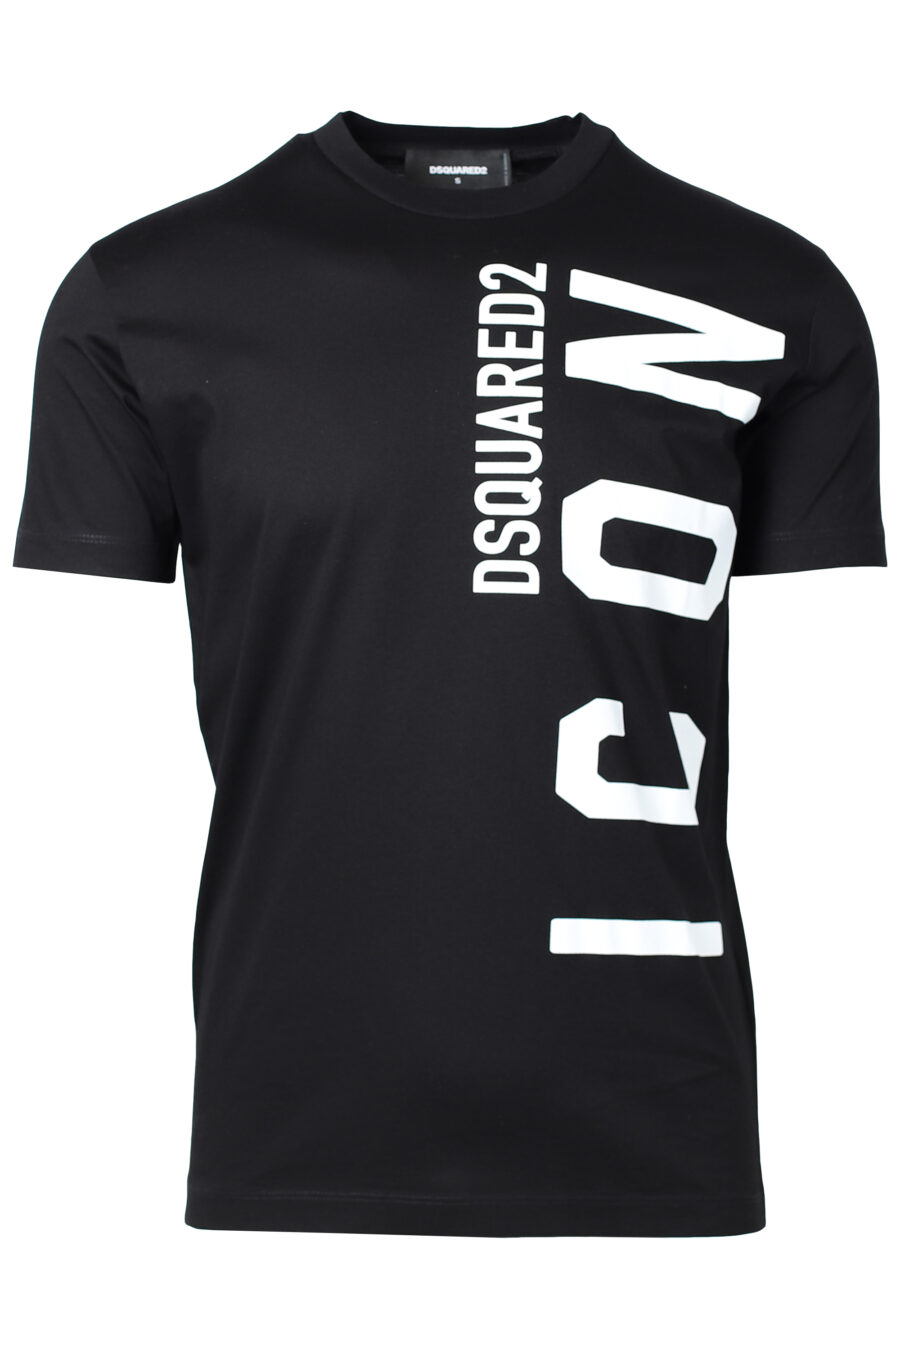 Schwarzes T-Shirt mit weißem vertikalen Maxilogo - IMG 2214